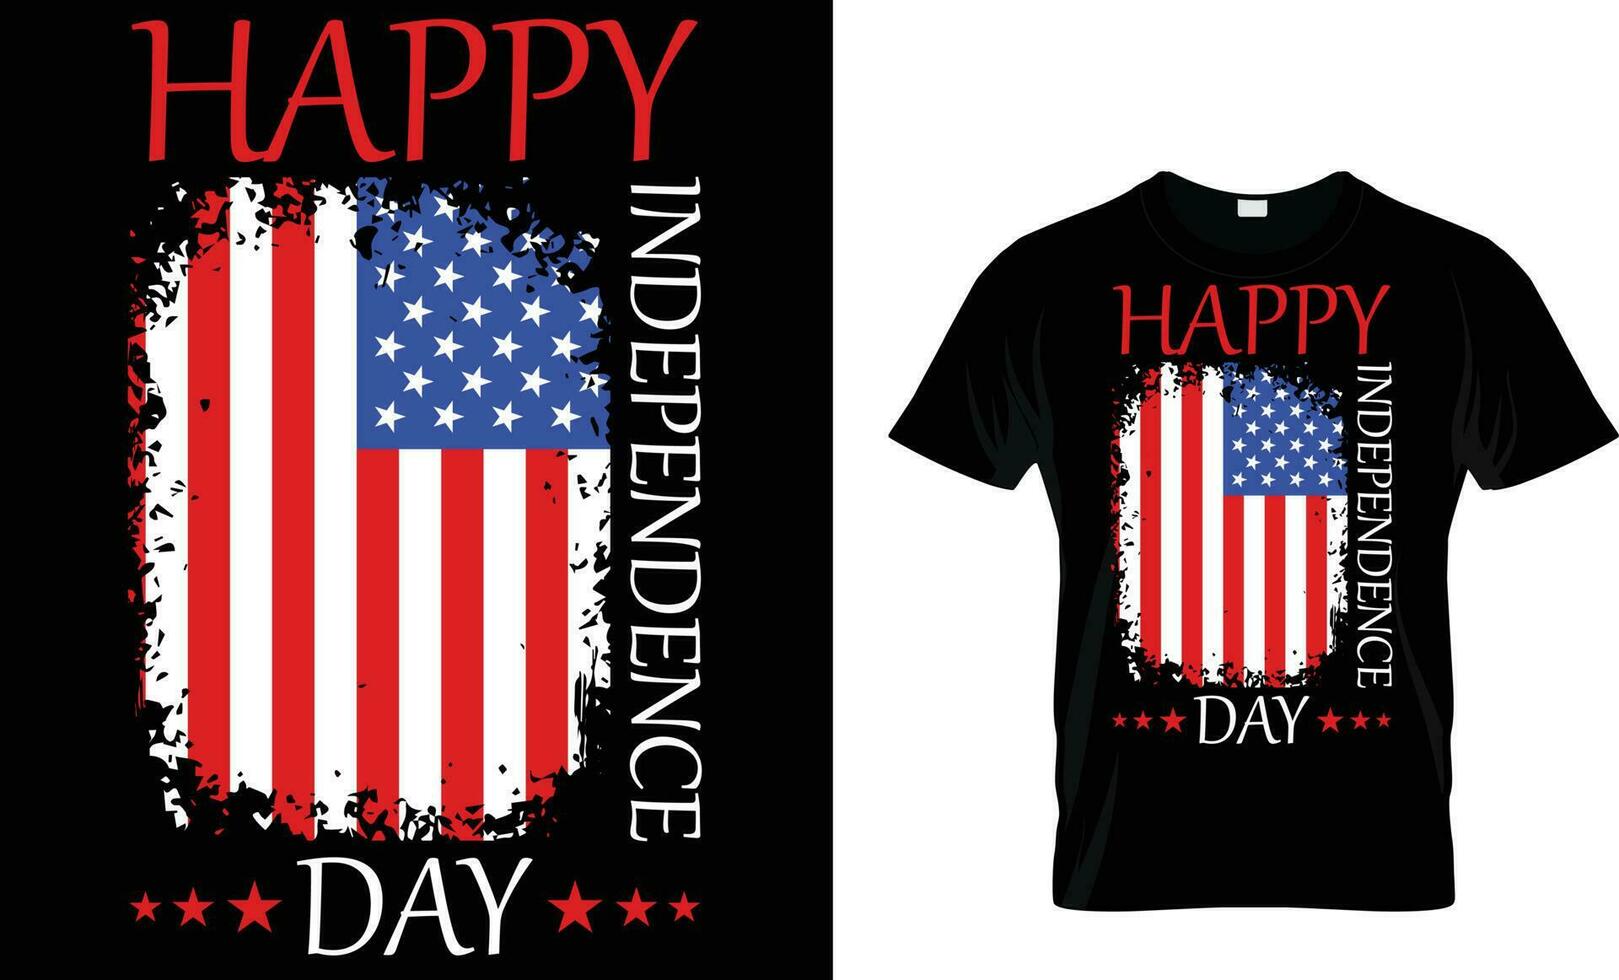 4 luglio design della maglietta del giorno dell'indipendenza degli Stati Uniti vettore